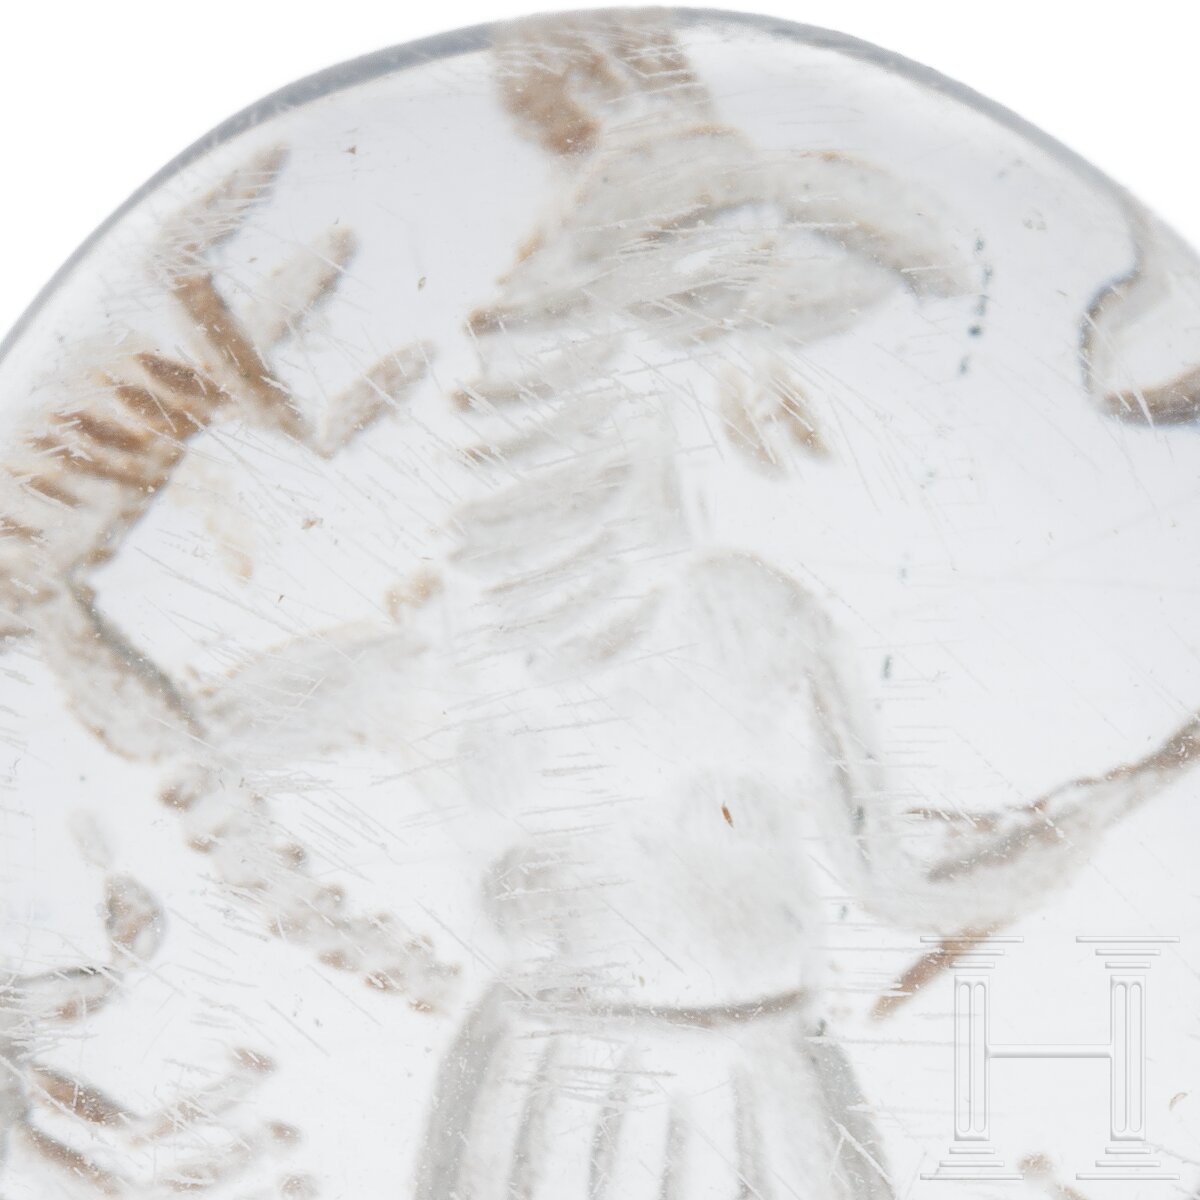 Magische Gemme mit hahnenköpfiger Gottheit aus Bergkristall, römisch, 2. - 3. Jhdt. n. Chr. - Image 3 of 3